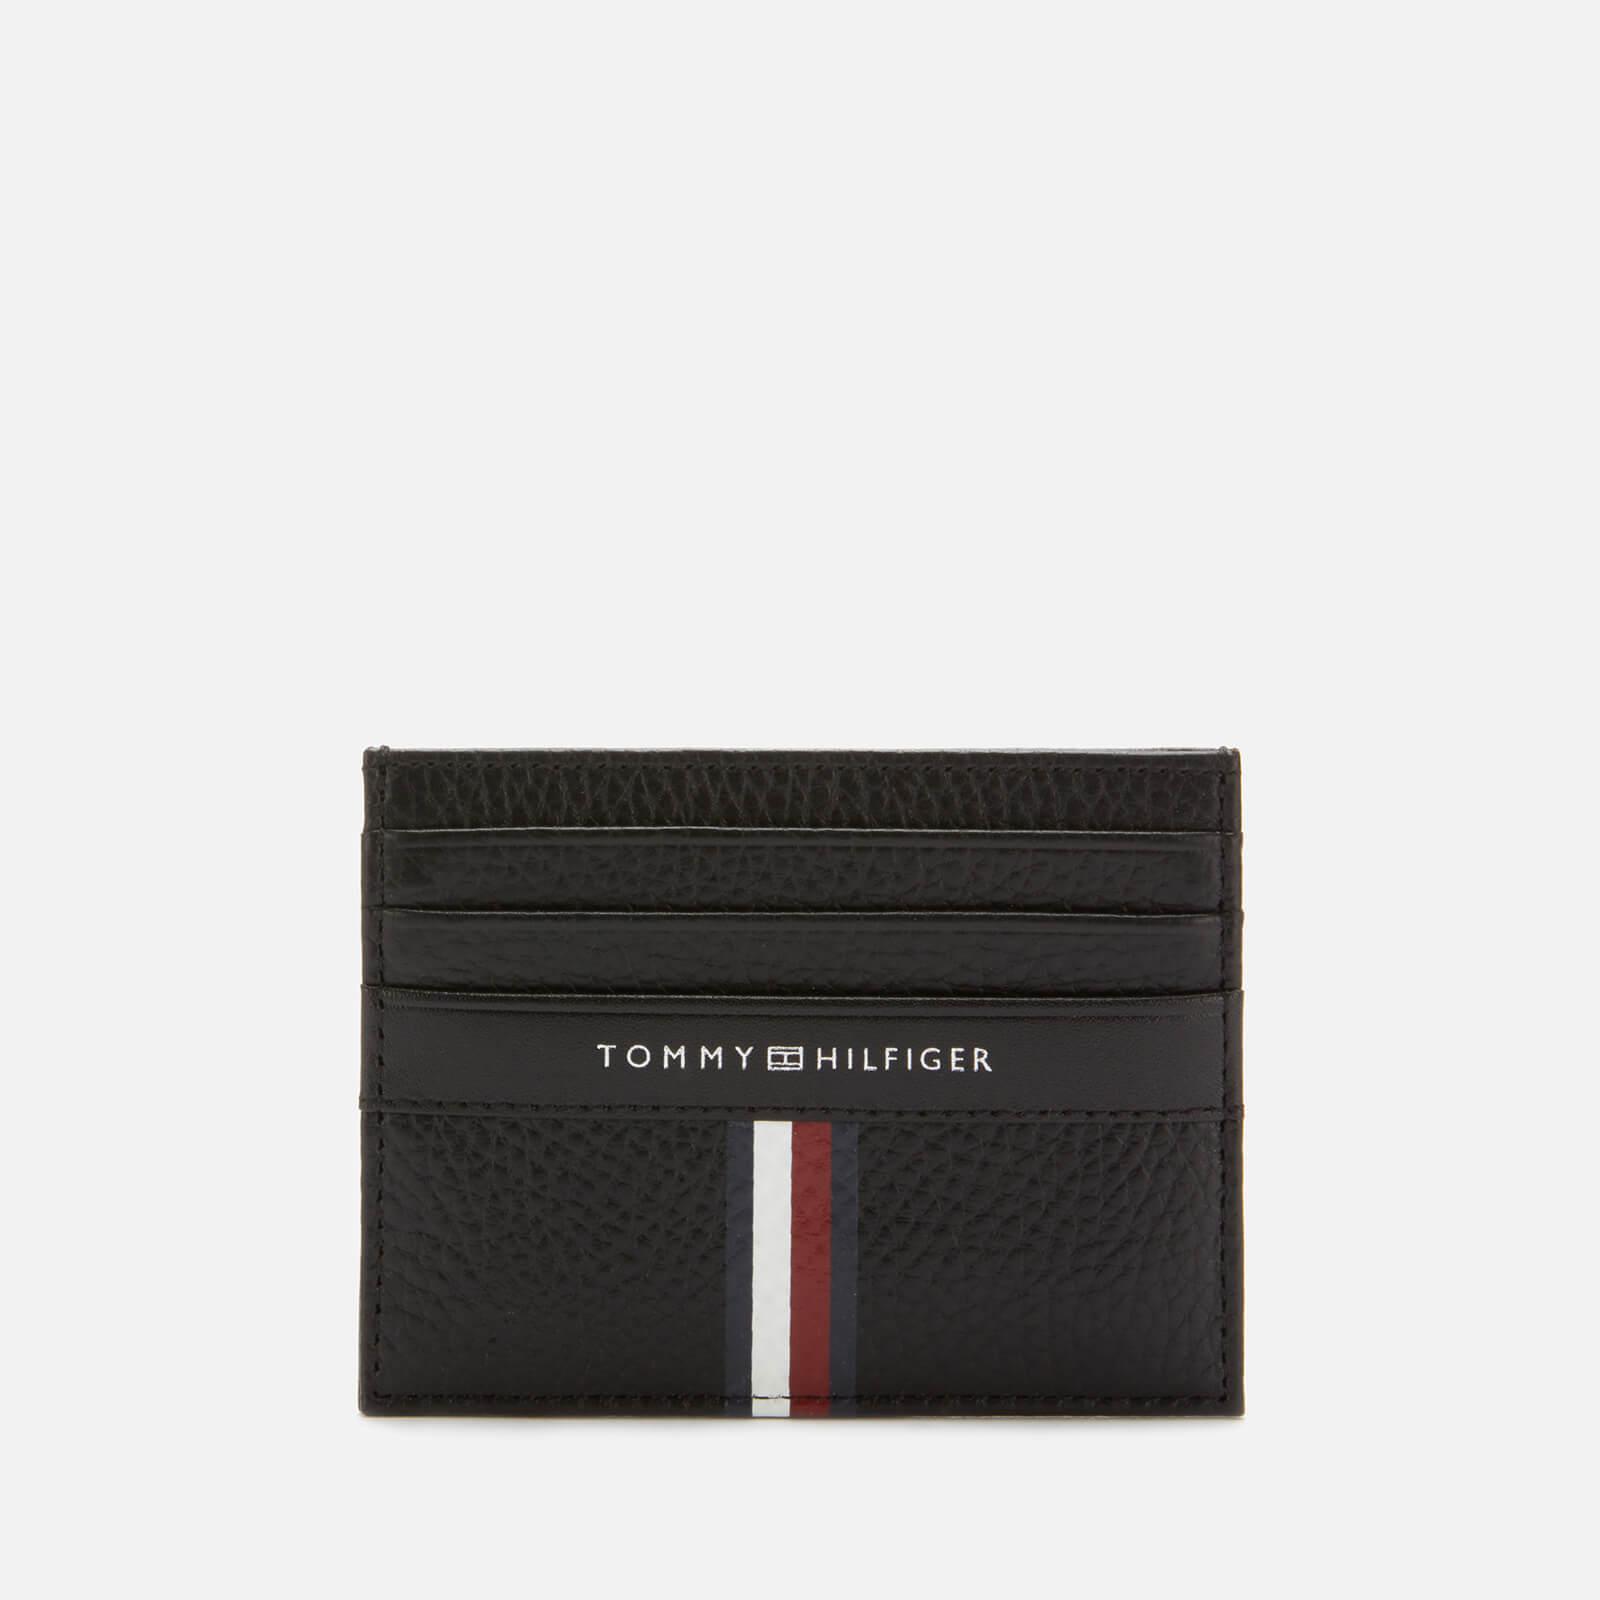 tommy hilfiger card holder wallet